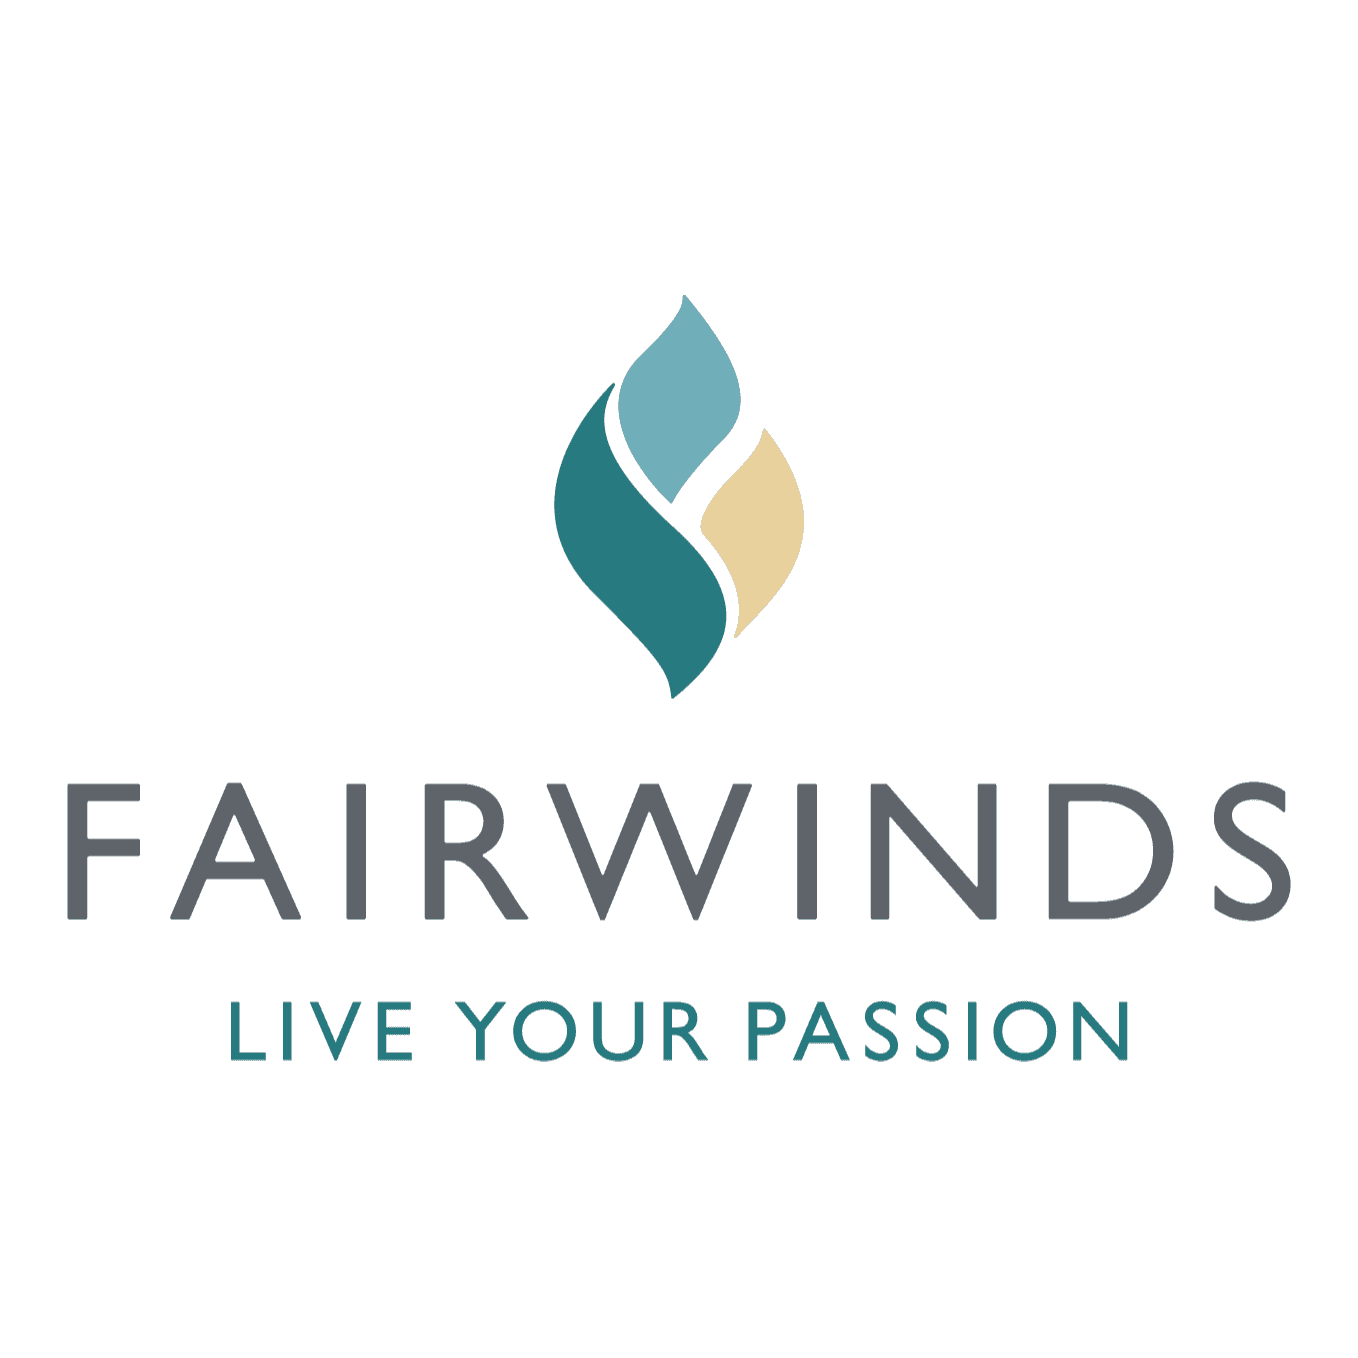 <p>Fairwinds Golf Club</p> logo